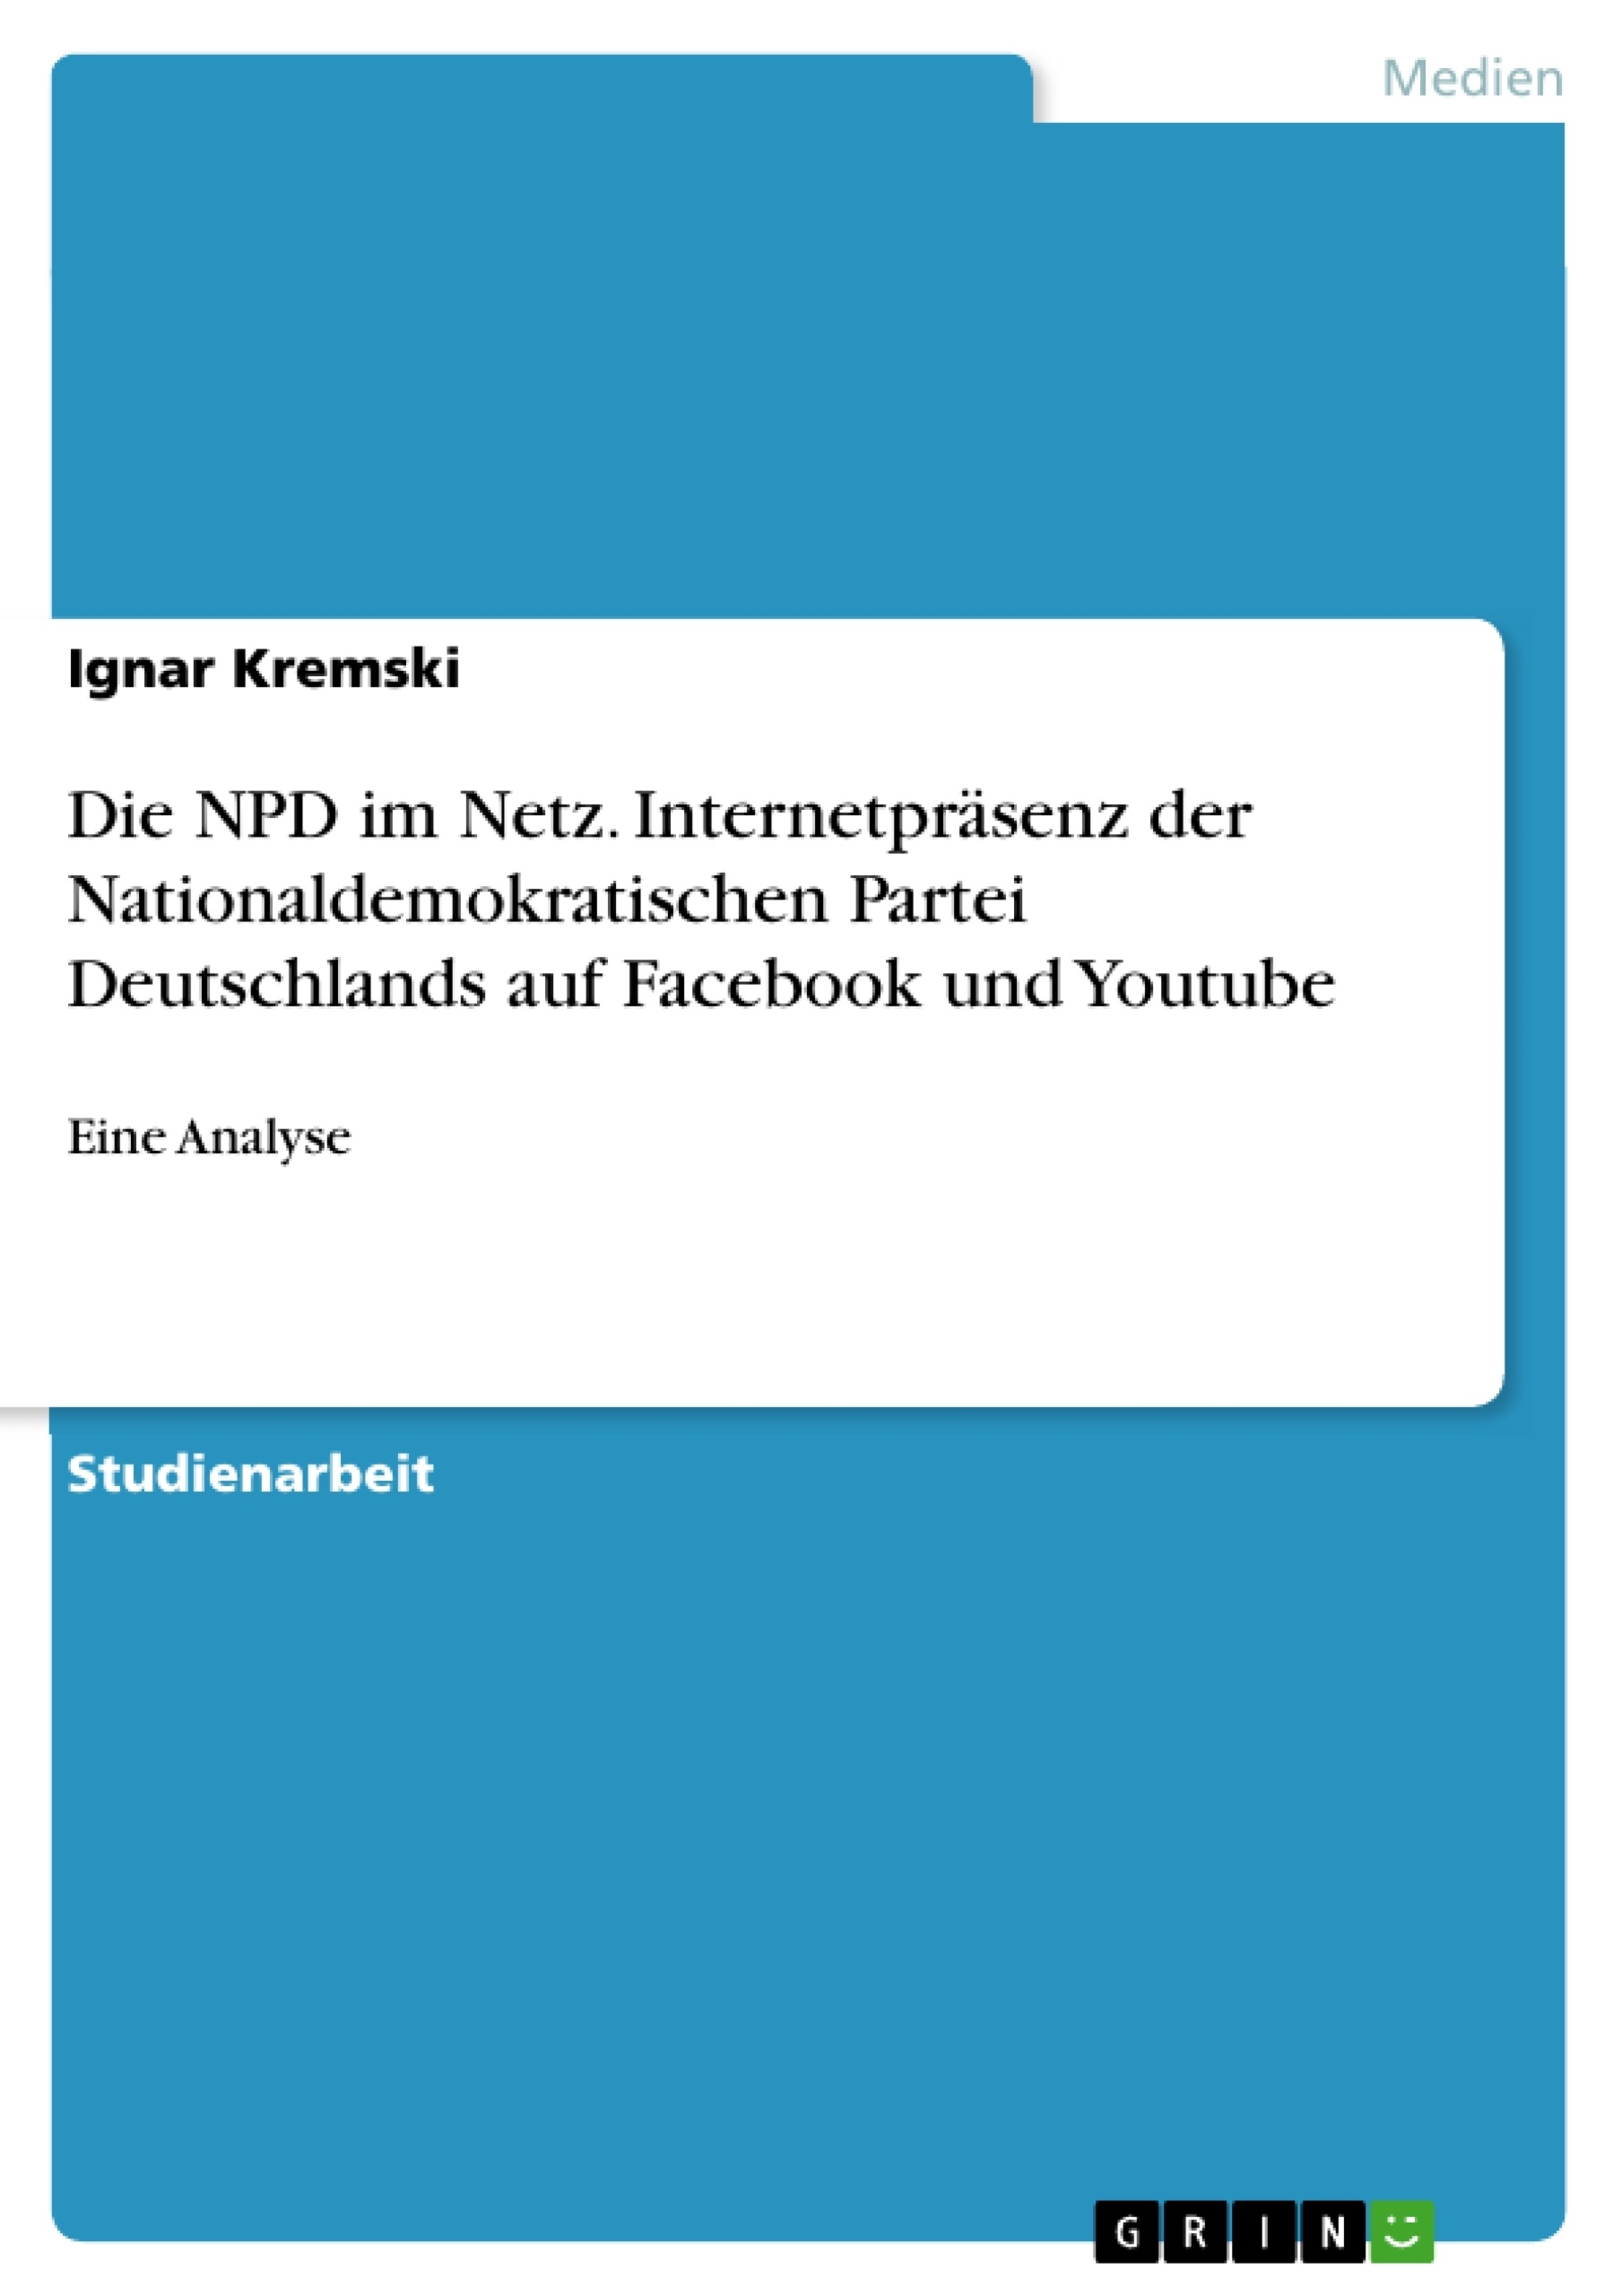 Title: Die NPD im Netz. Internetpräsenz der Nationaldemokratischen Partei Deutschlands auf Facebook und Youtube